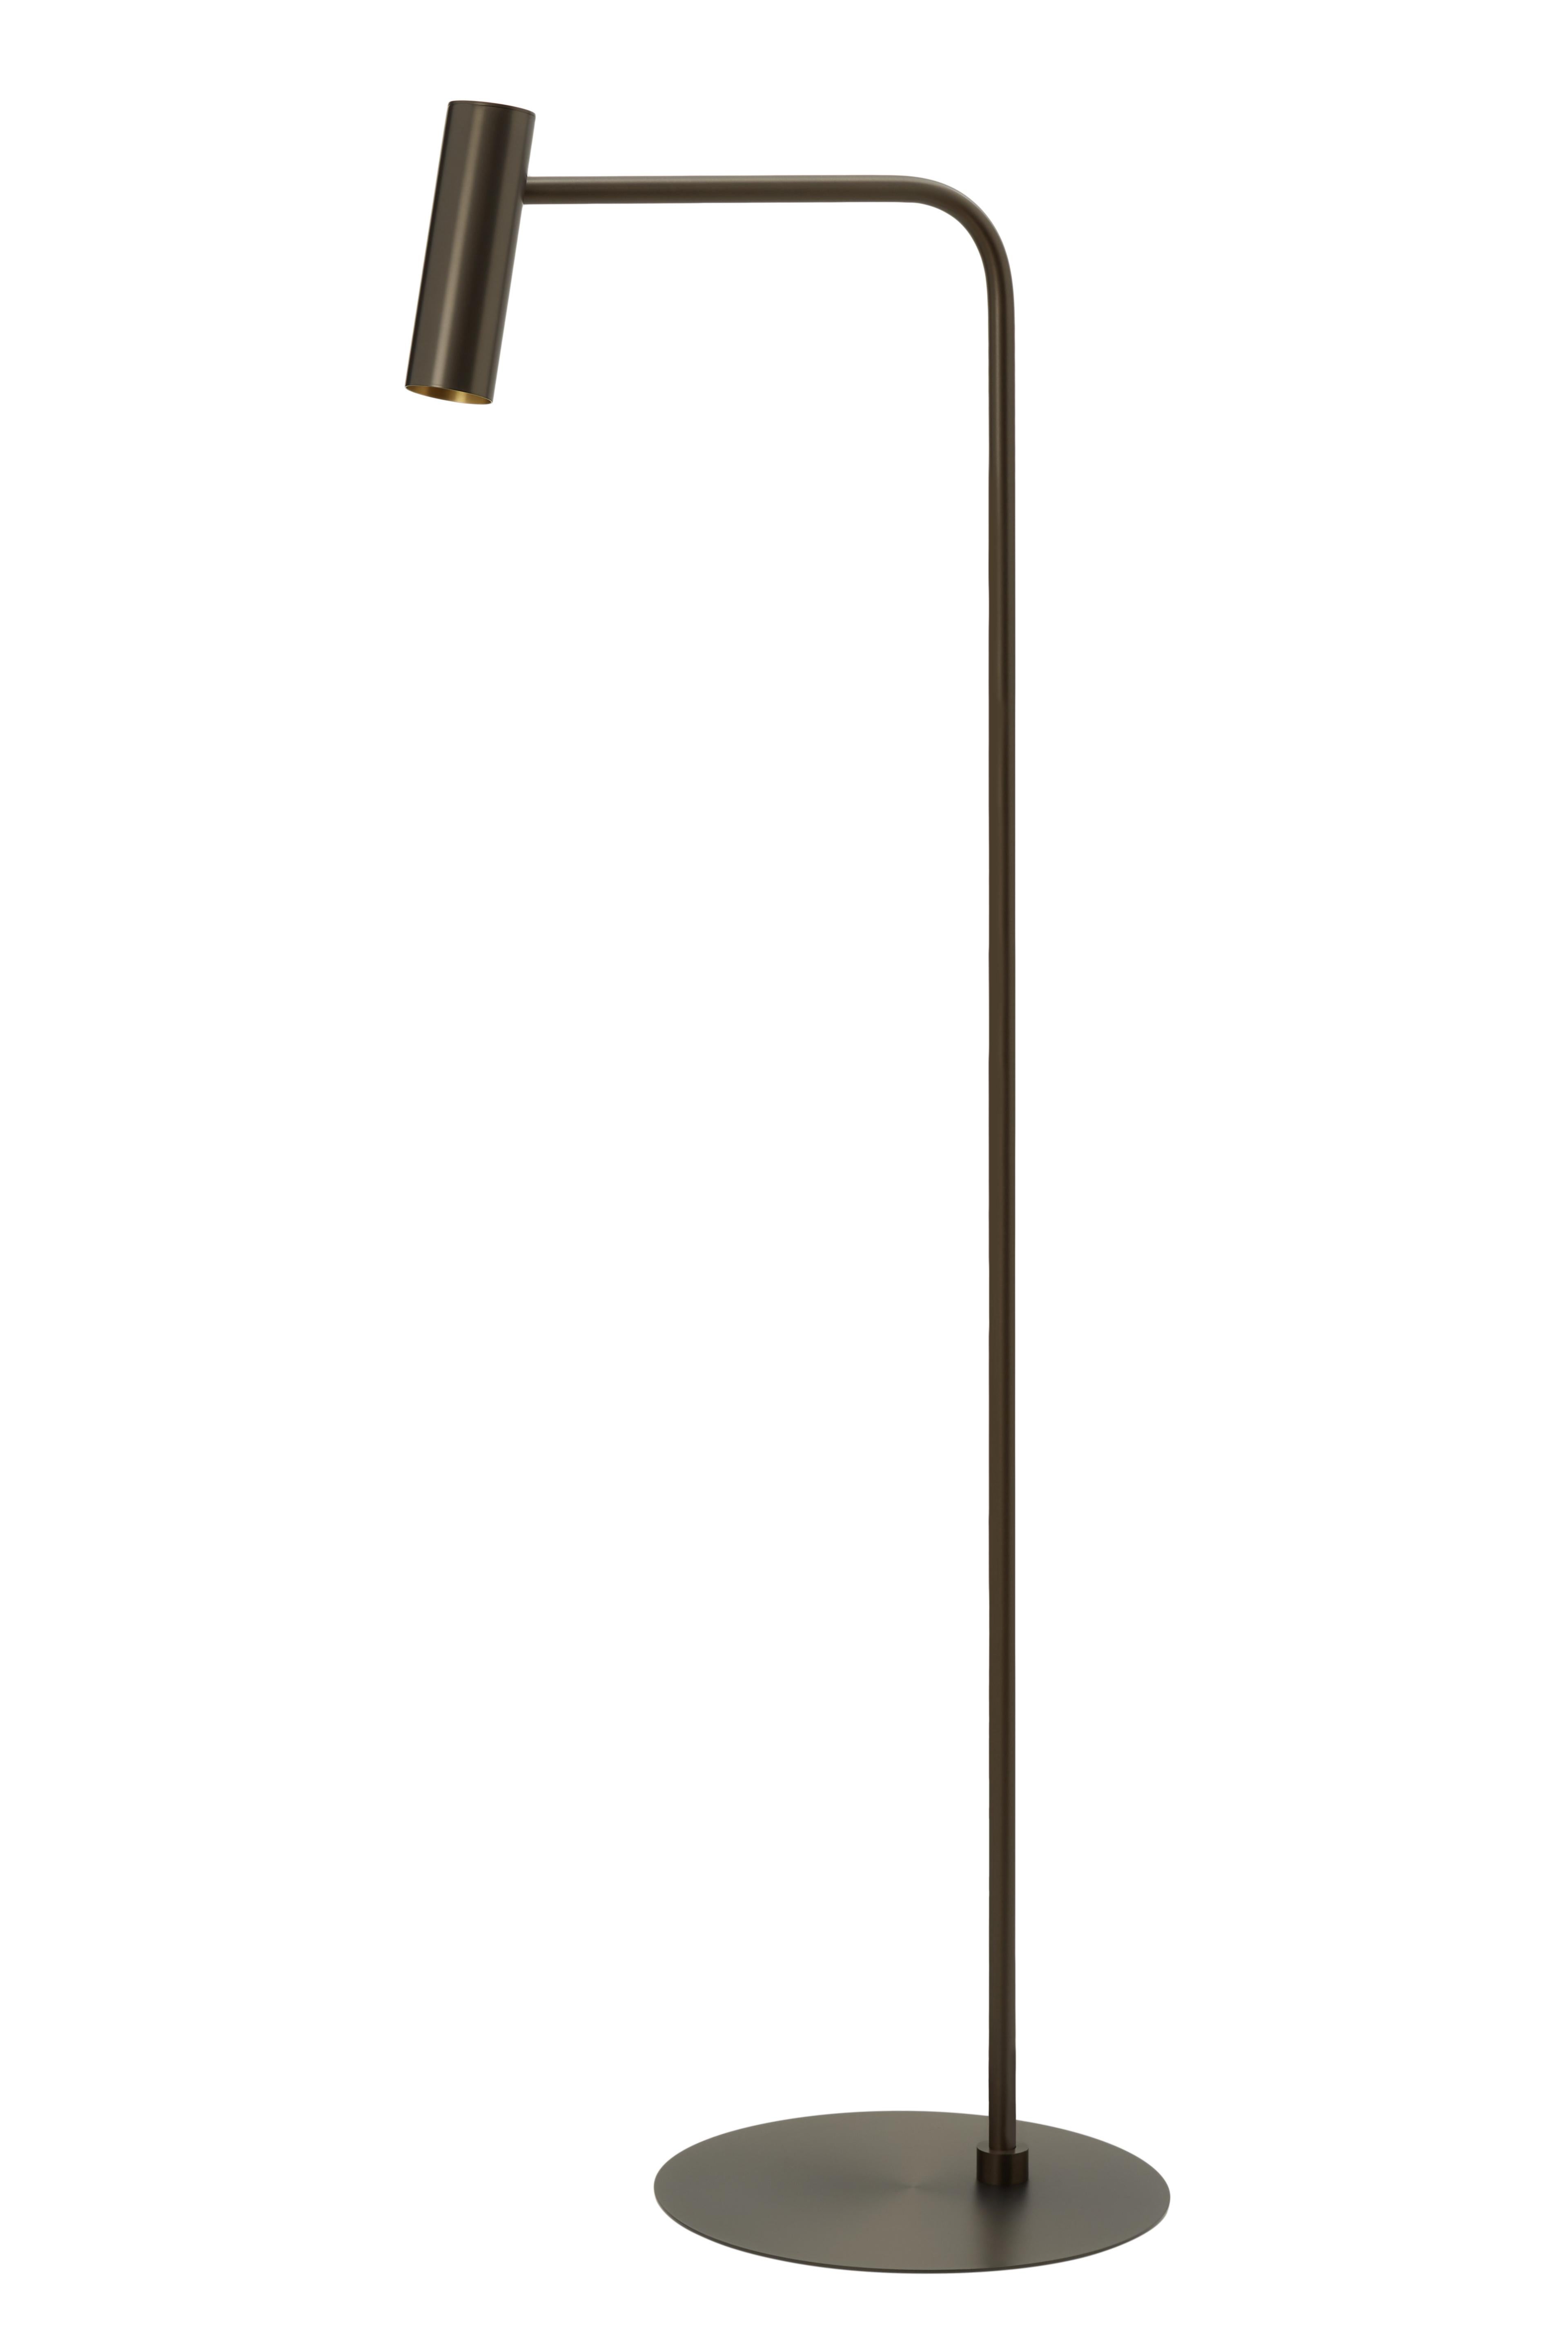 Heron stehleuchte von CTO Lighting
MATERIALIEN: Bronze mit Sockel aus Calacatta-Viola-Marmor
Auch erhältlich in satiniertem Messing mit beweglichem Kopf und Sockel aus geschliffenem schwarzem Marquina-Marmor
Abmessungen: H 159 x B 59 cm 

Alle